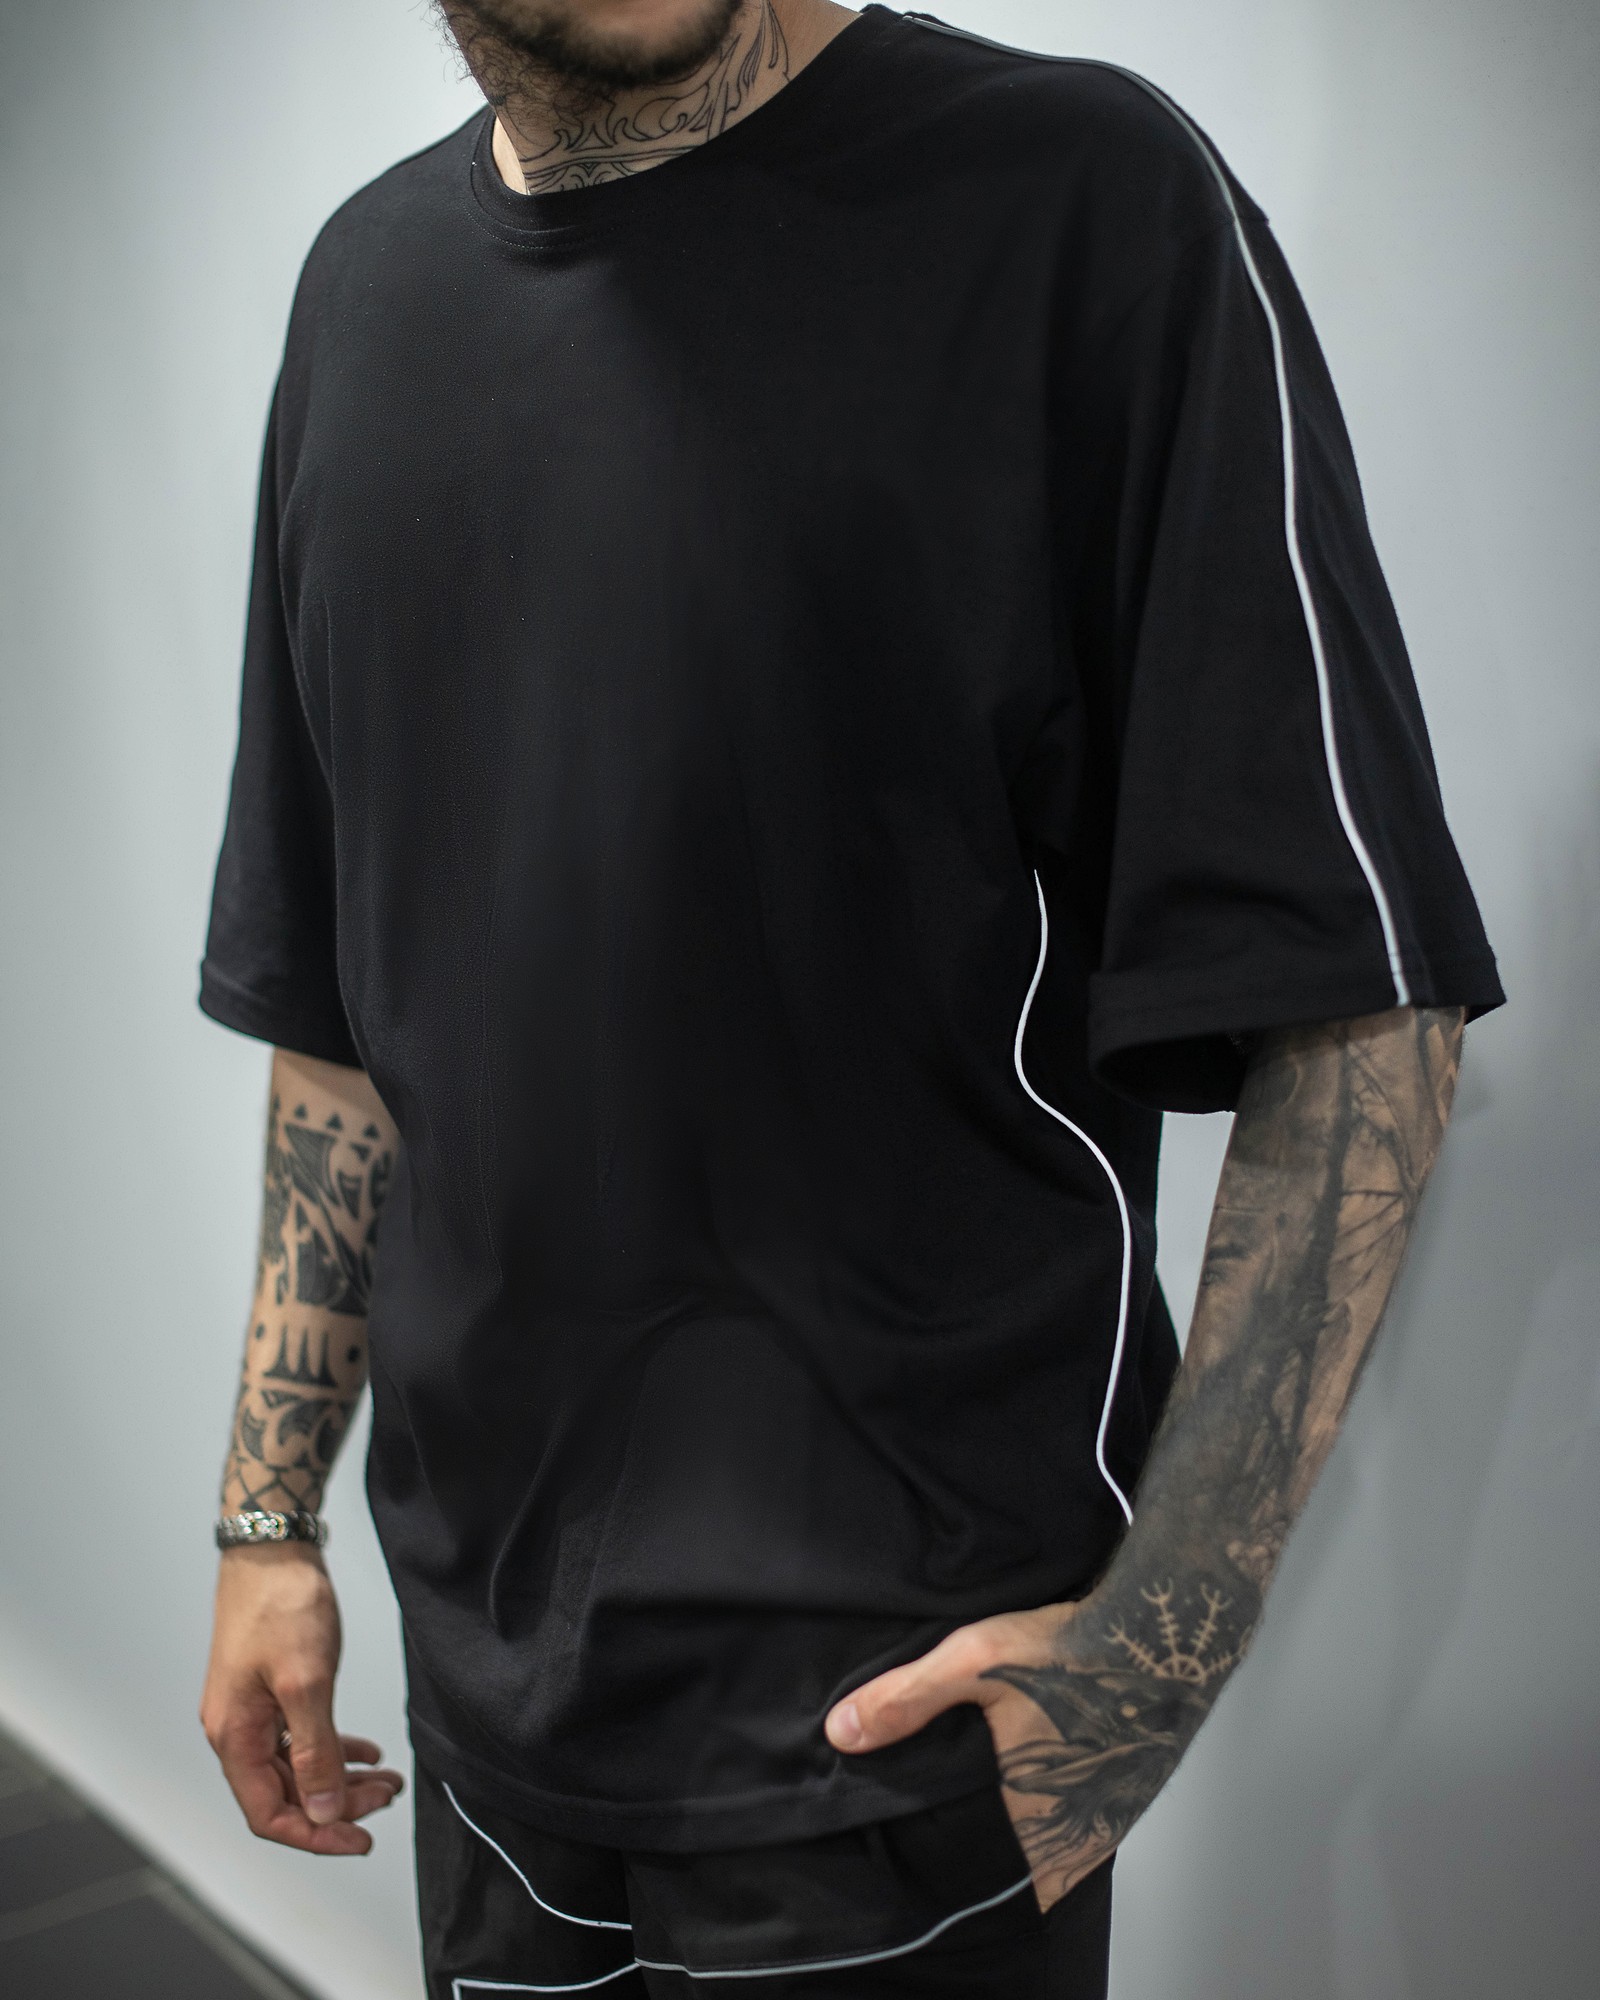 Oversize T-shirt OGONPUSHKA Xeed black with reflective edging